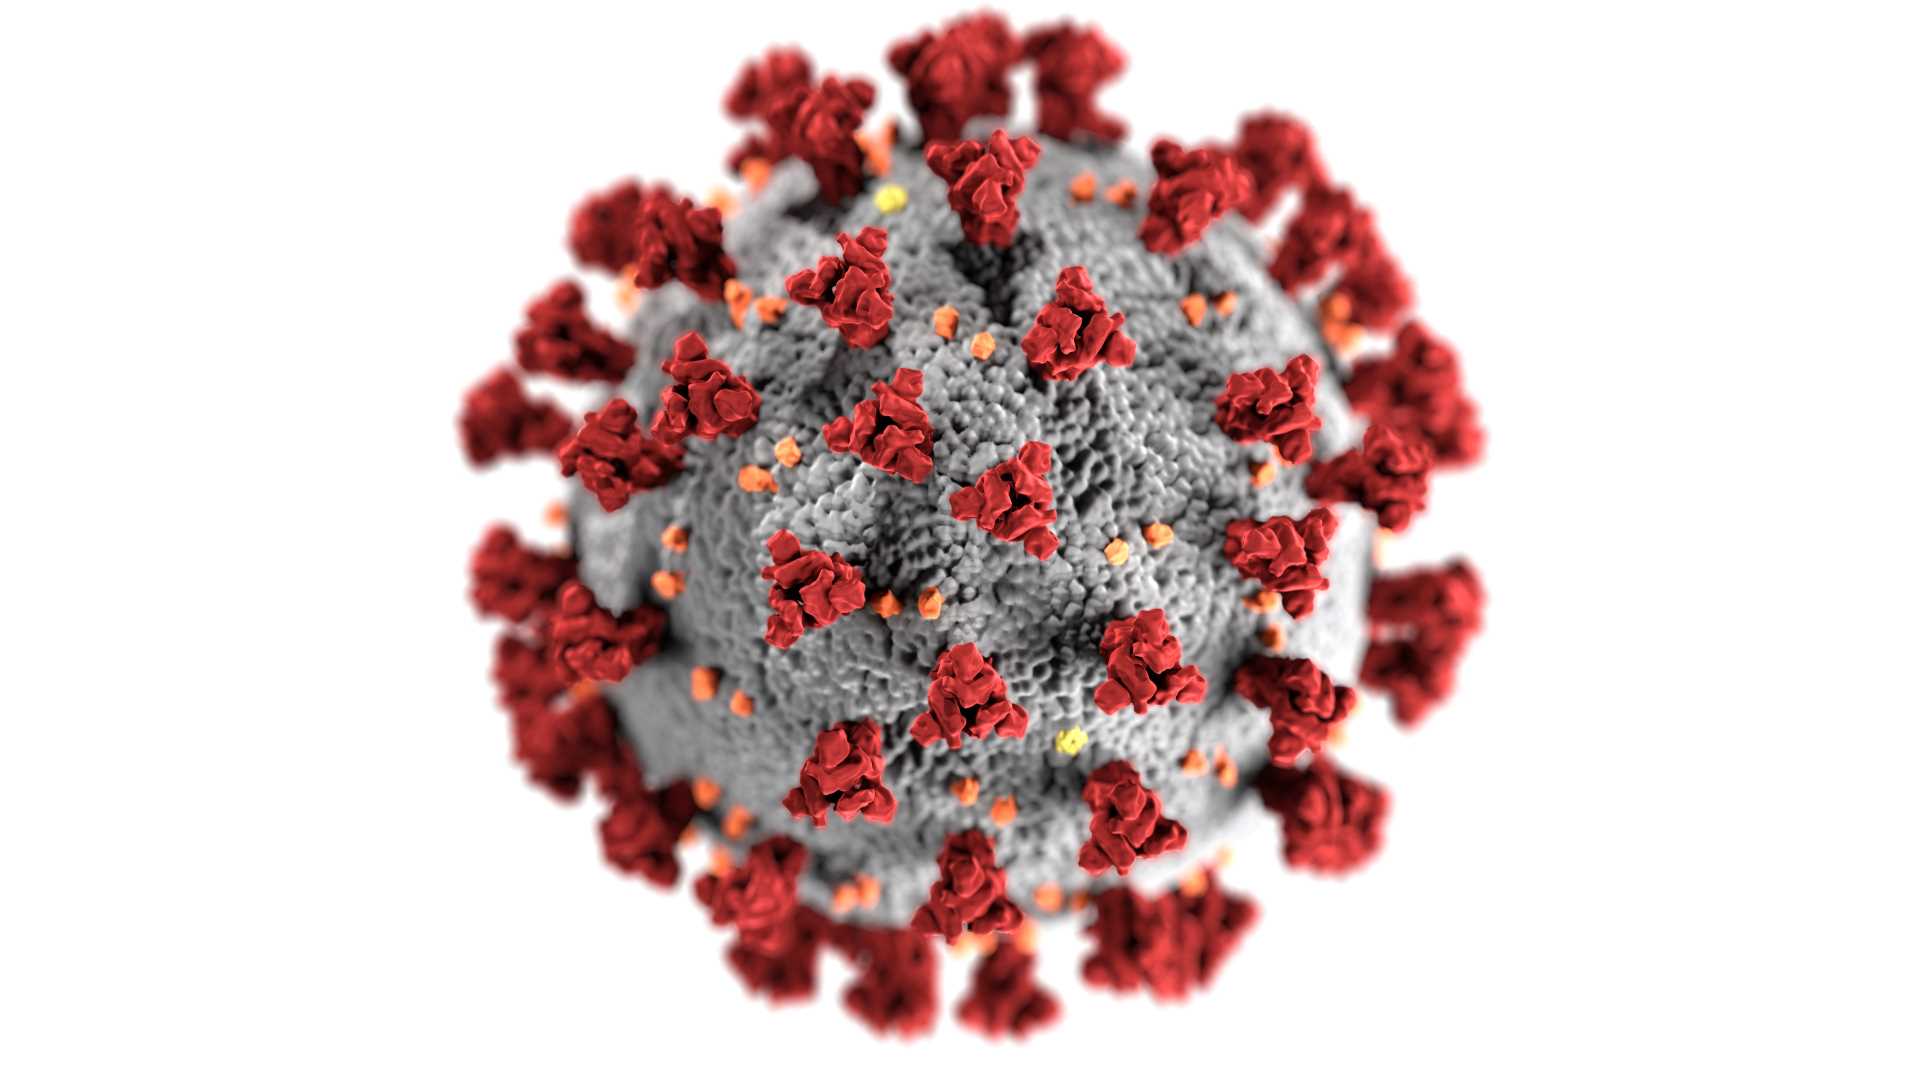 emergee-emergenza-coronavirus